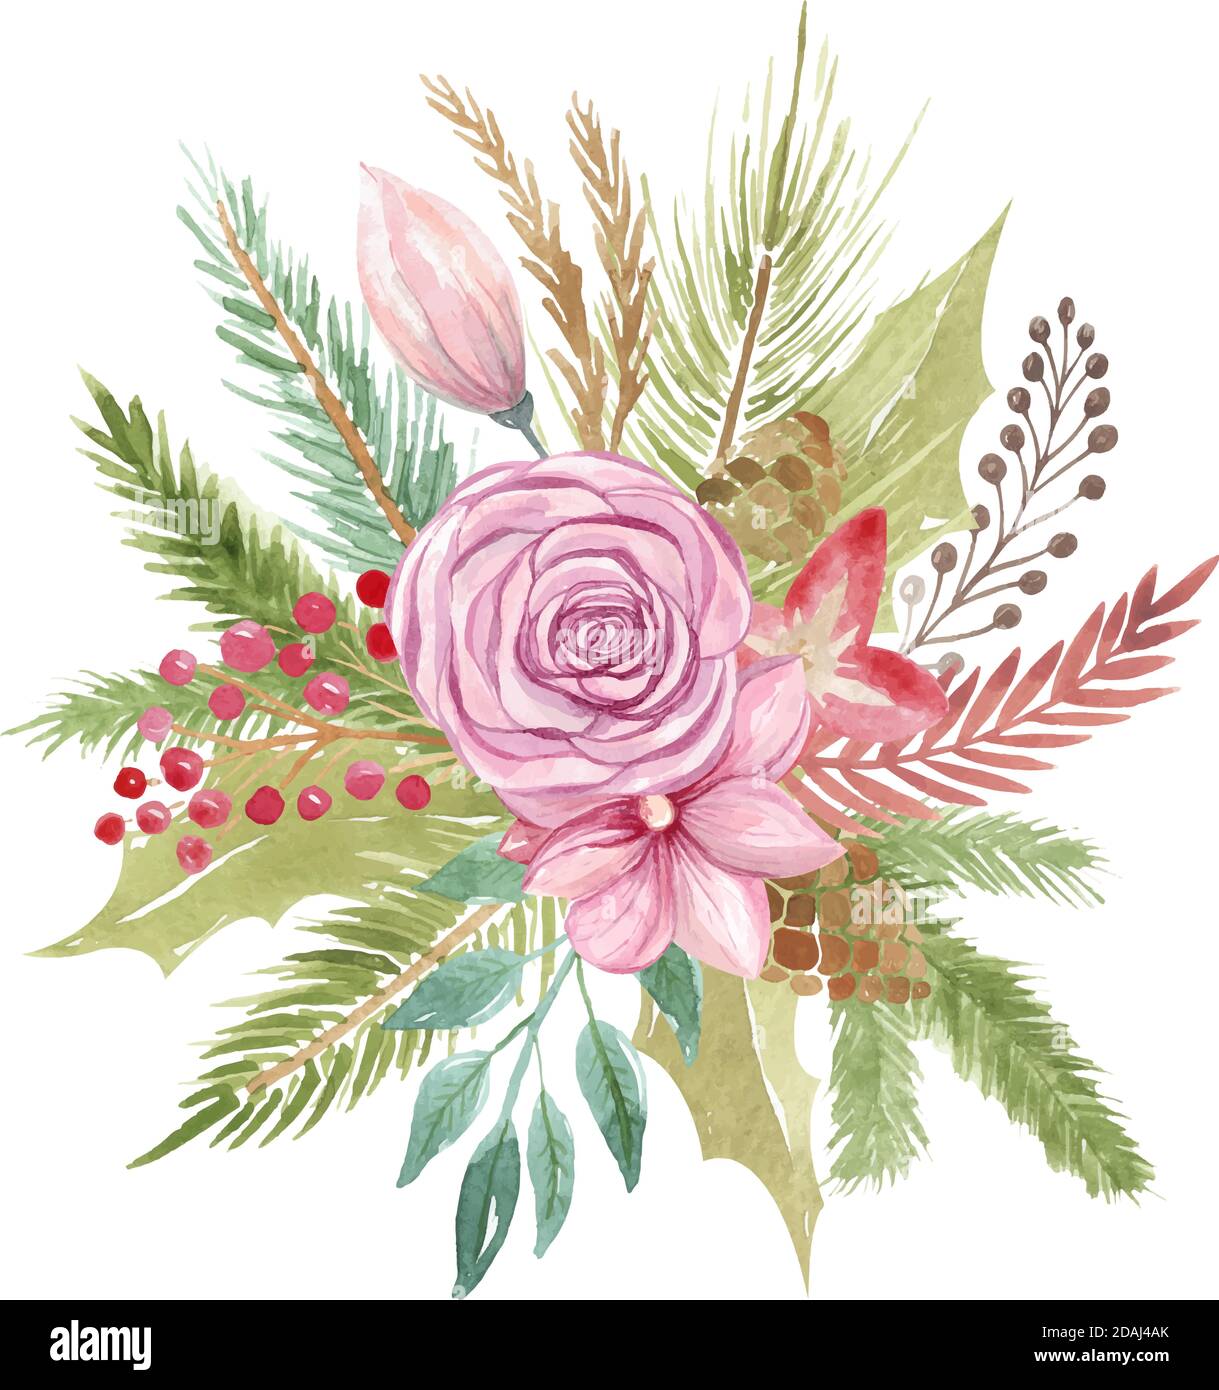 Weihnachtsstrauß Hochzeit. Florales Element zur Dekoration von Grußkarten, Einladungen und Karten Botanisches Arrangement Winterdesign Stock Vektor